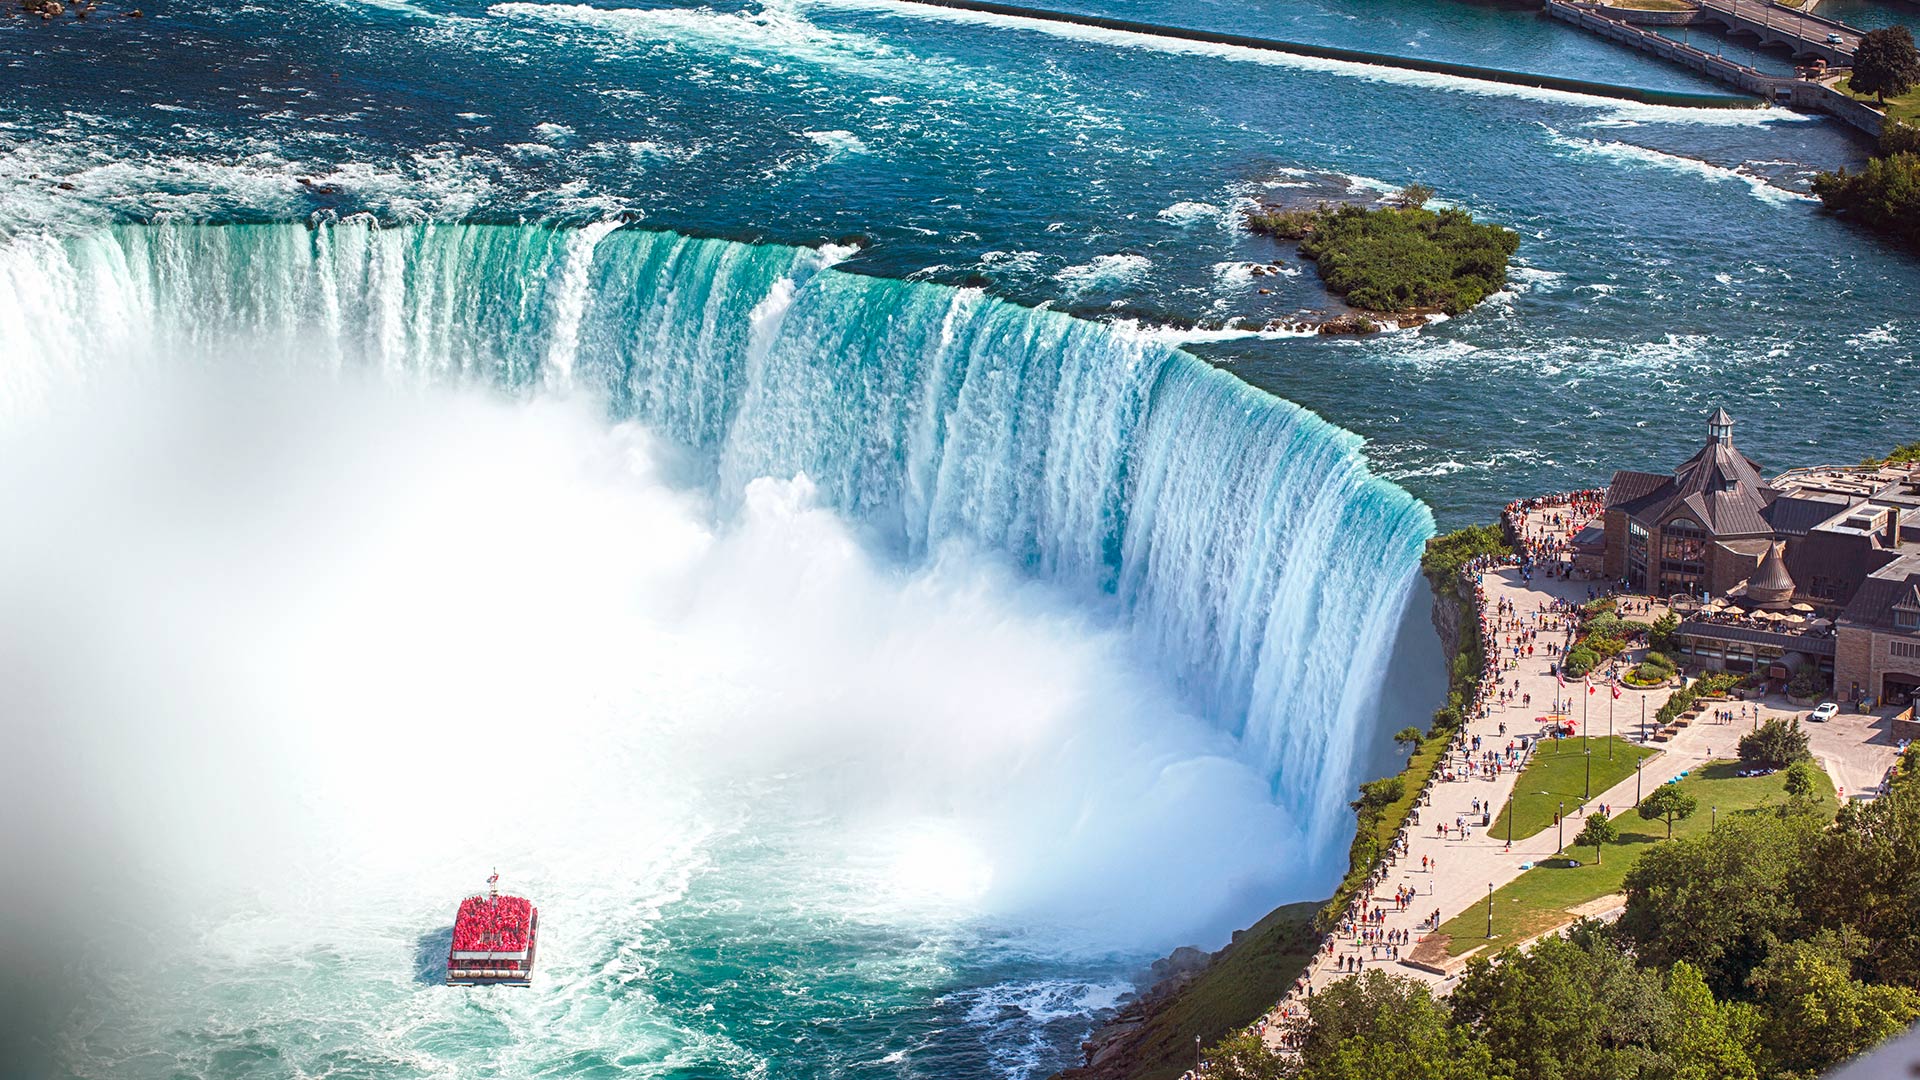 Aerial view of horseshoe falls in Niagara Falls